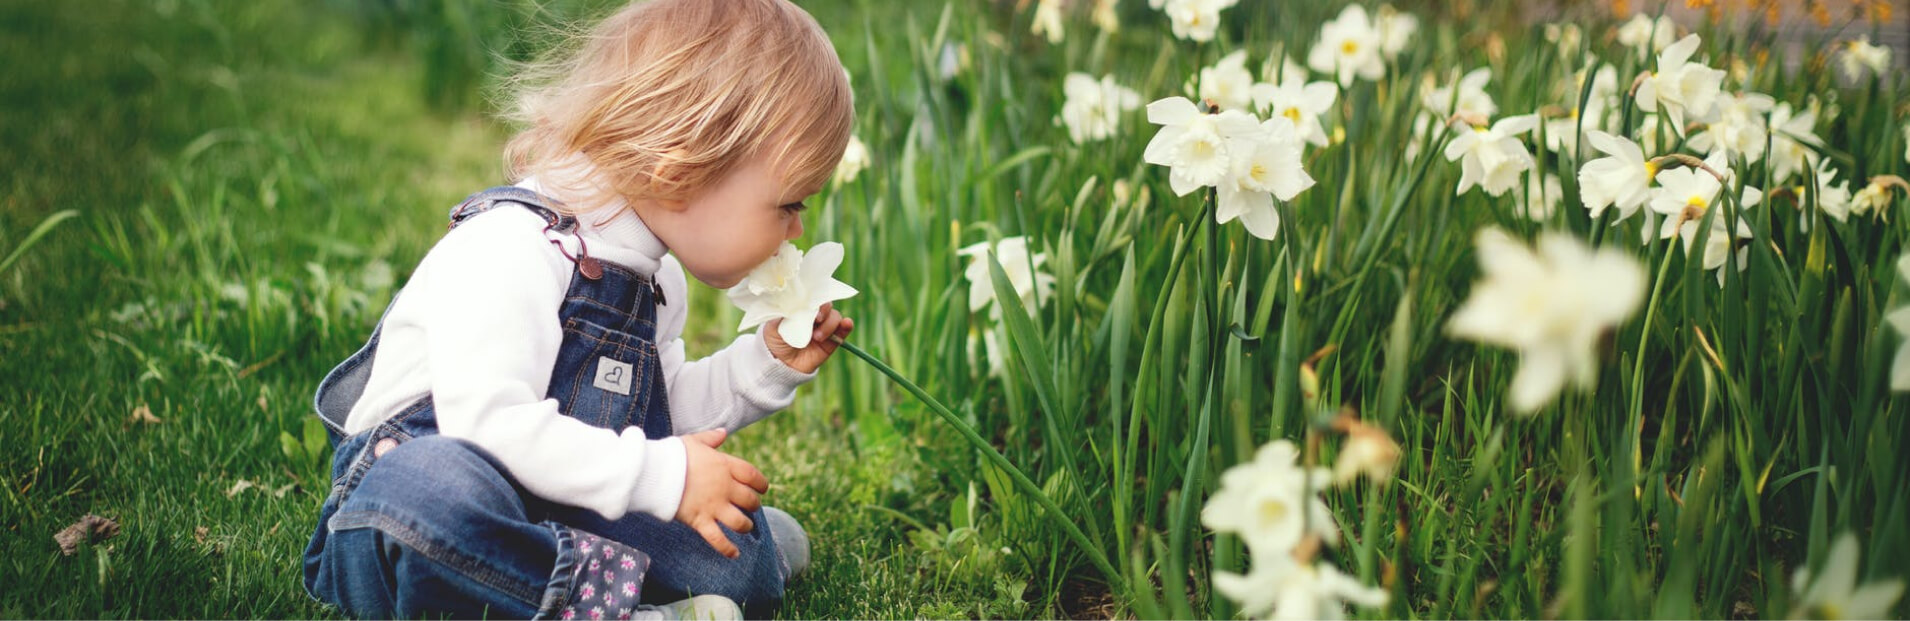 Ребенок и цветы